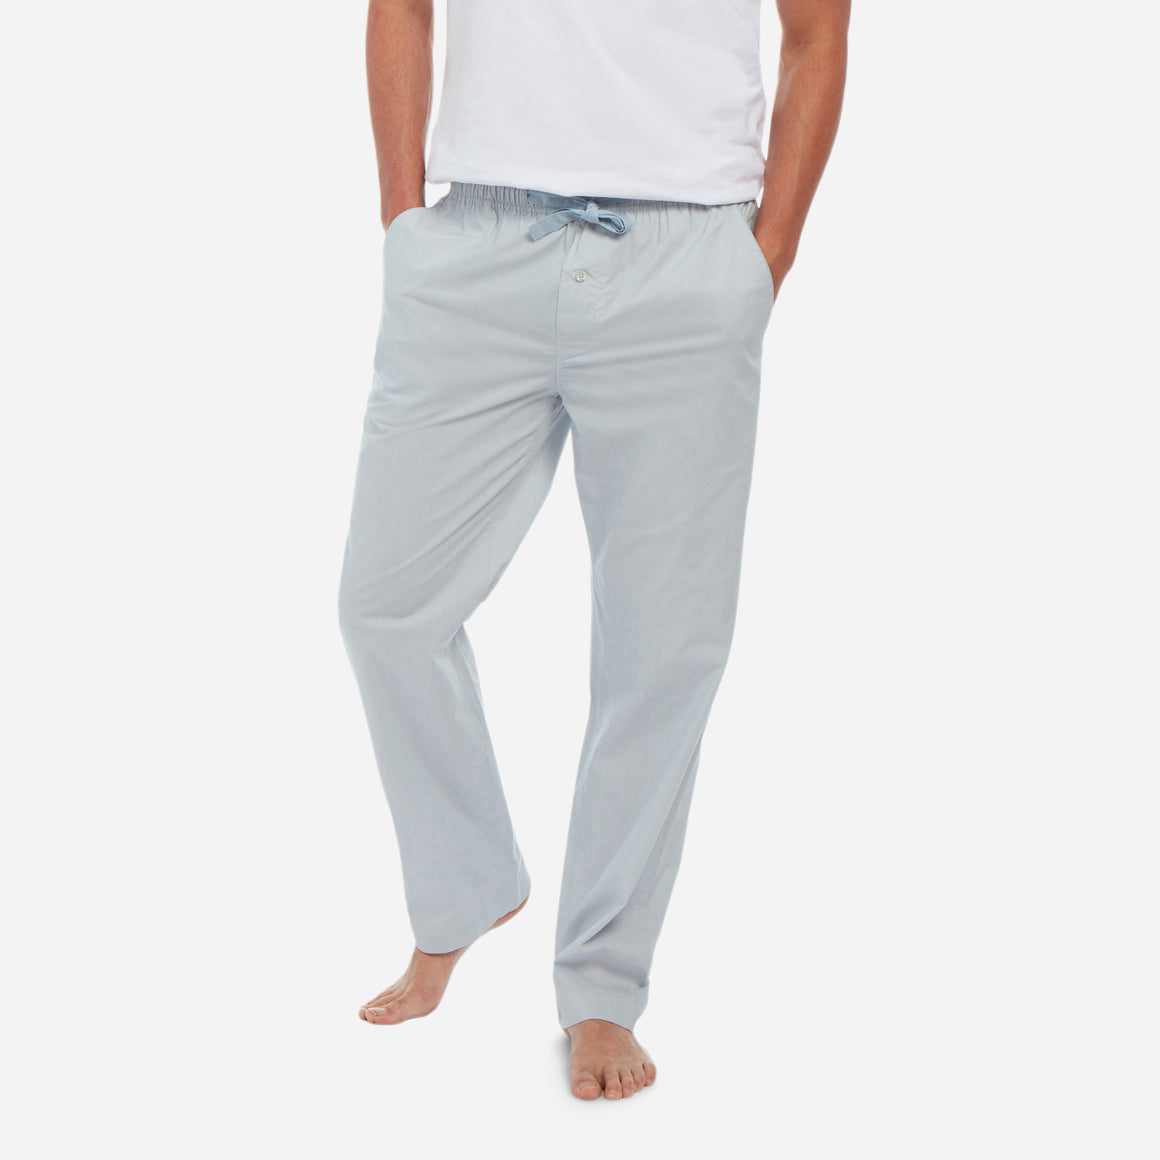 Radyan Men's Soft Stretchy Pajama Pants. Cotton Nightwear Pajama